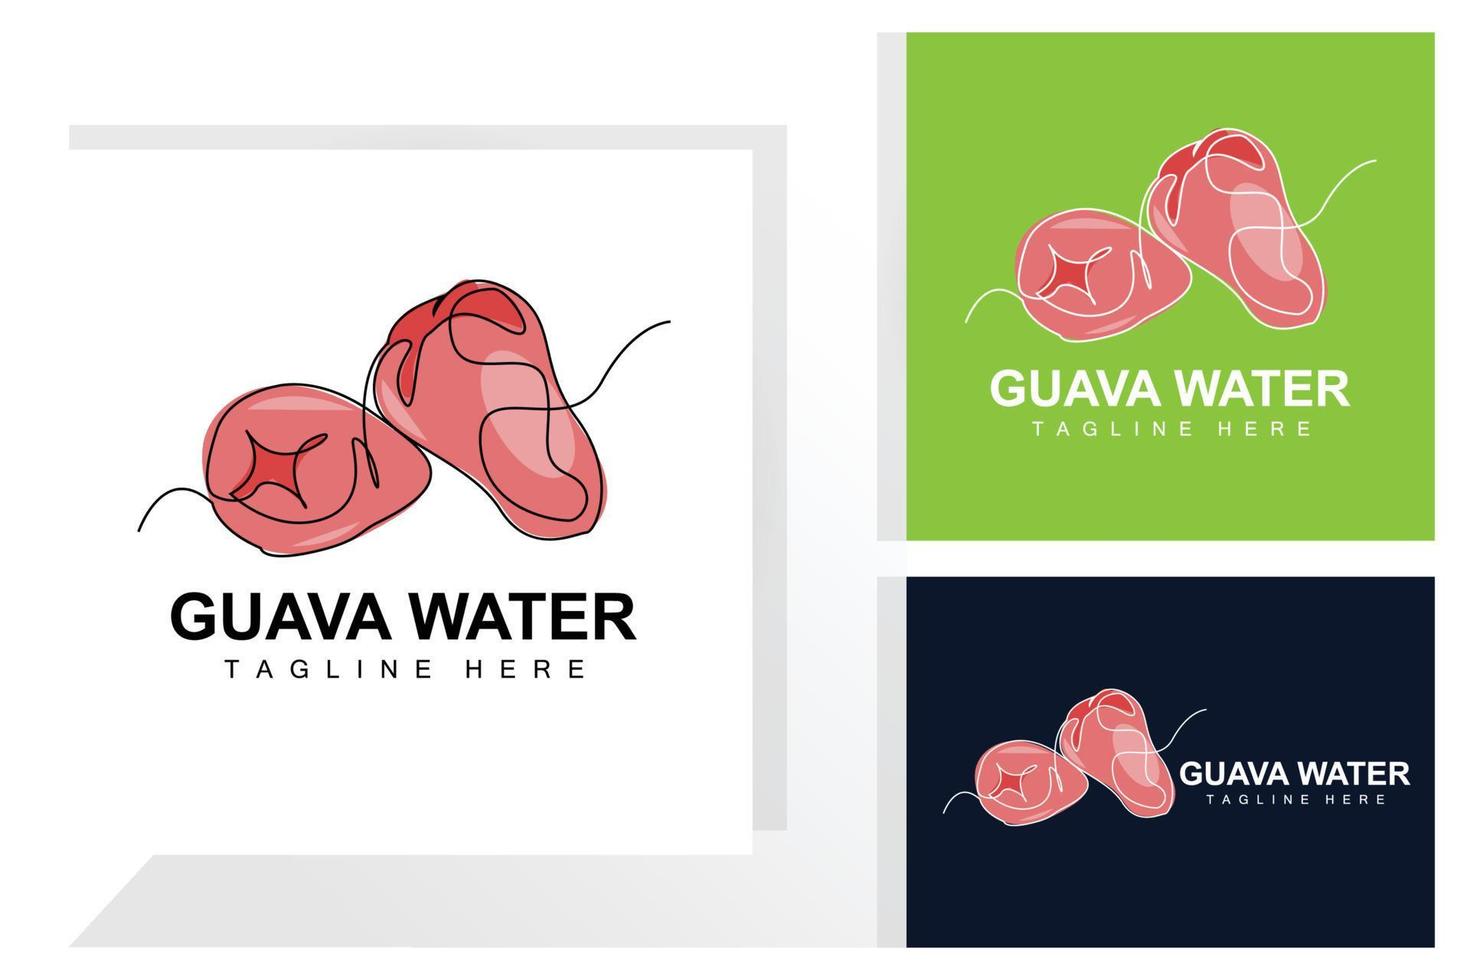 water guava logo ontwerp vector met lijn stijl vers fruit markt illustratie vitamine fabriek